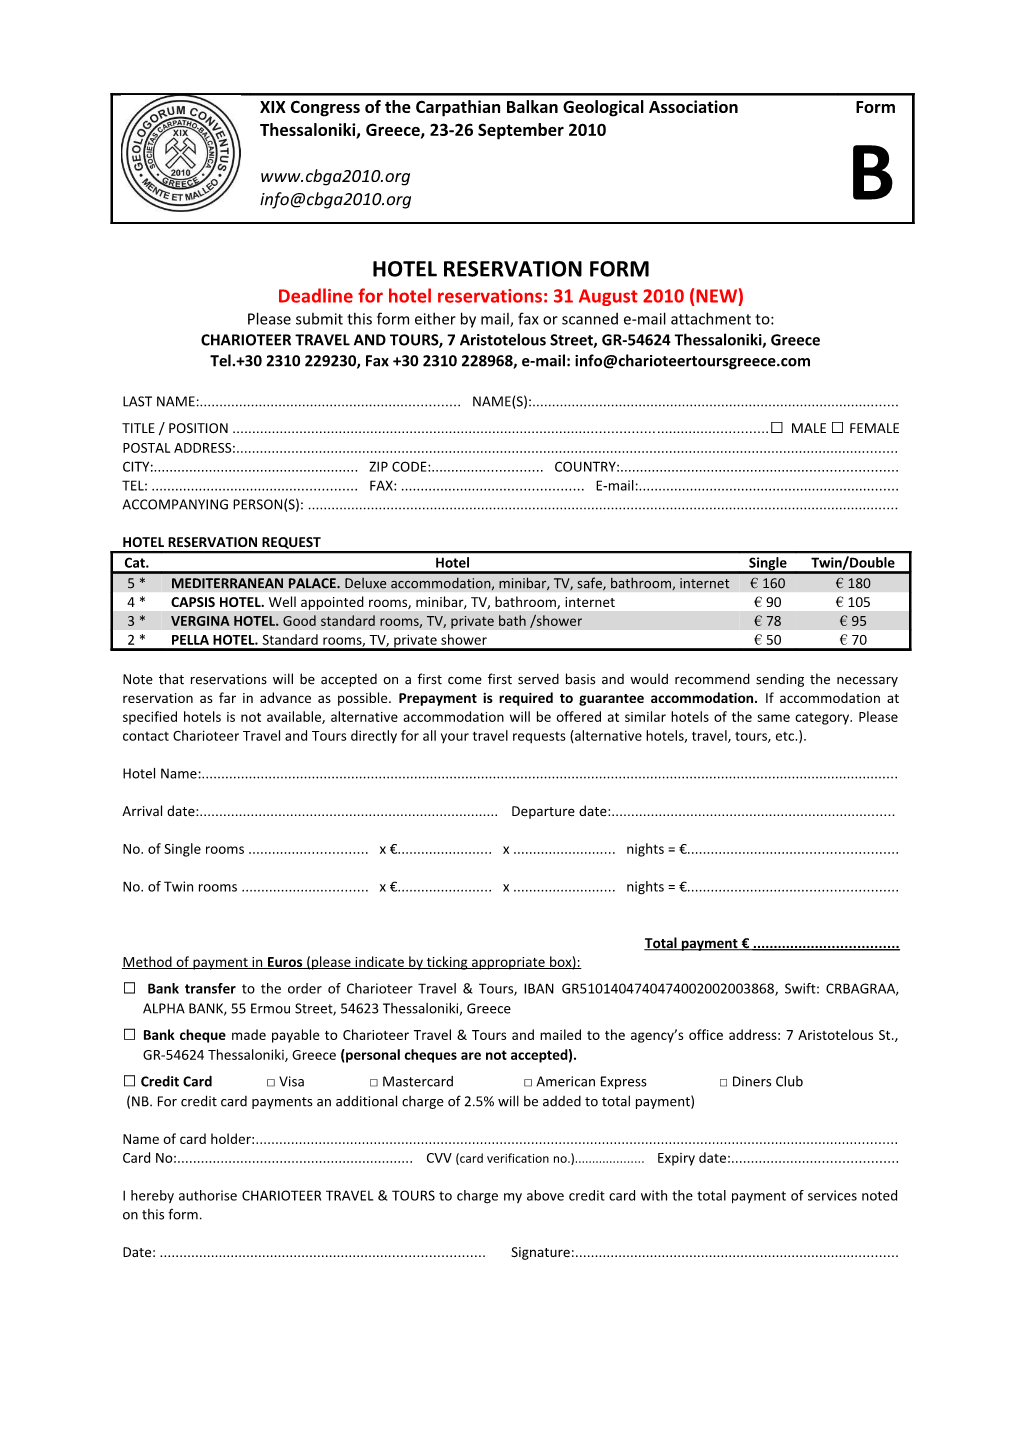 Hotel Reservation Form s9